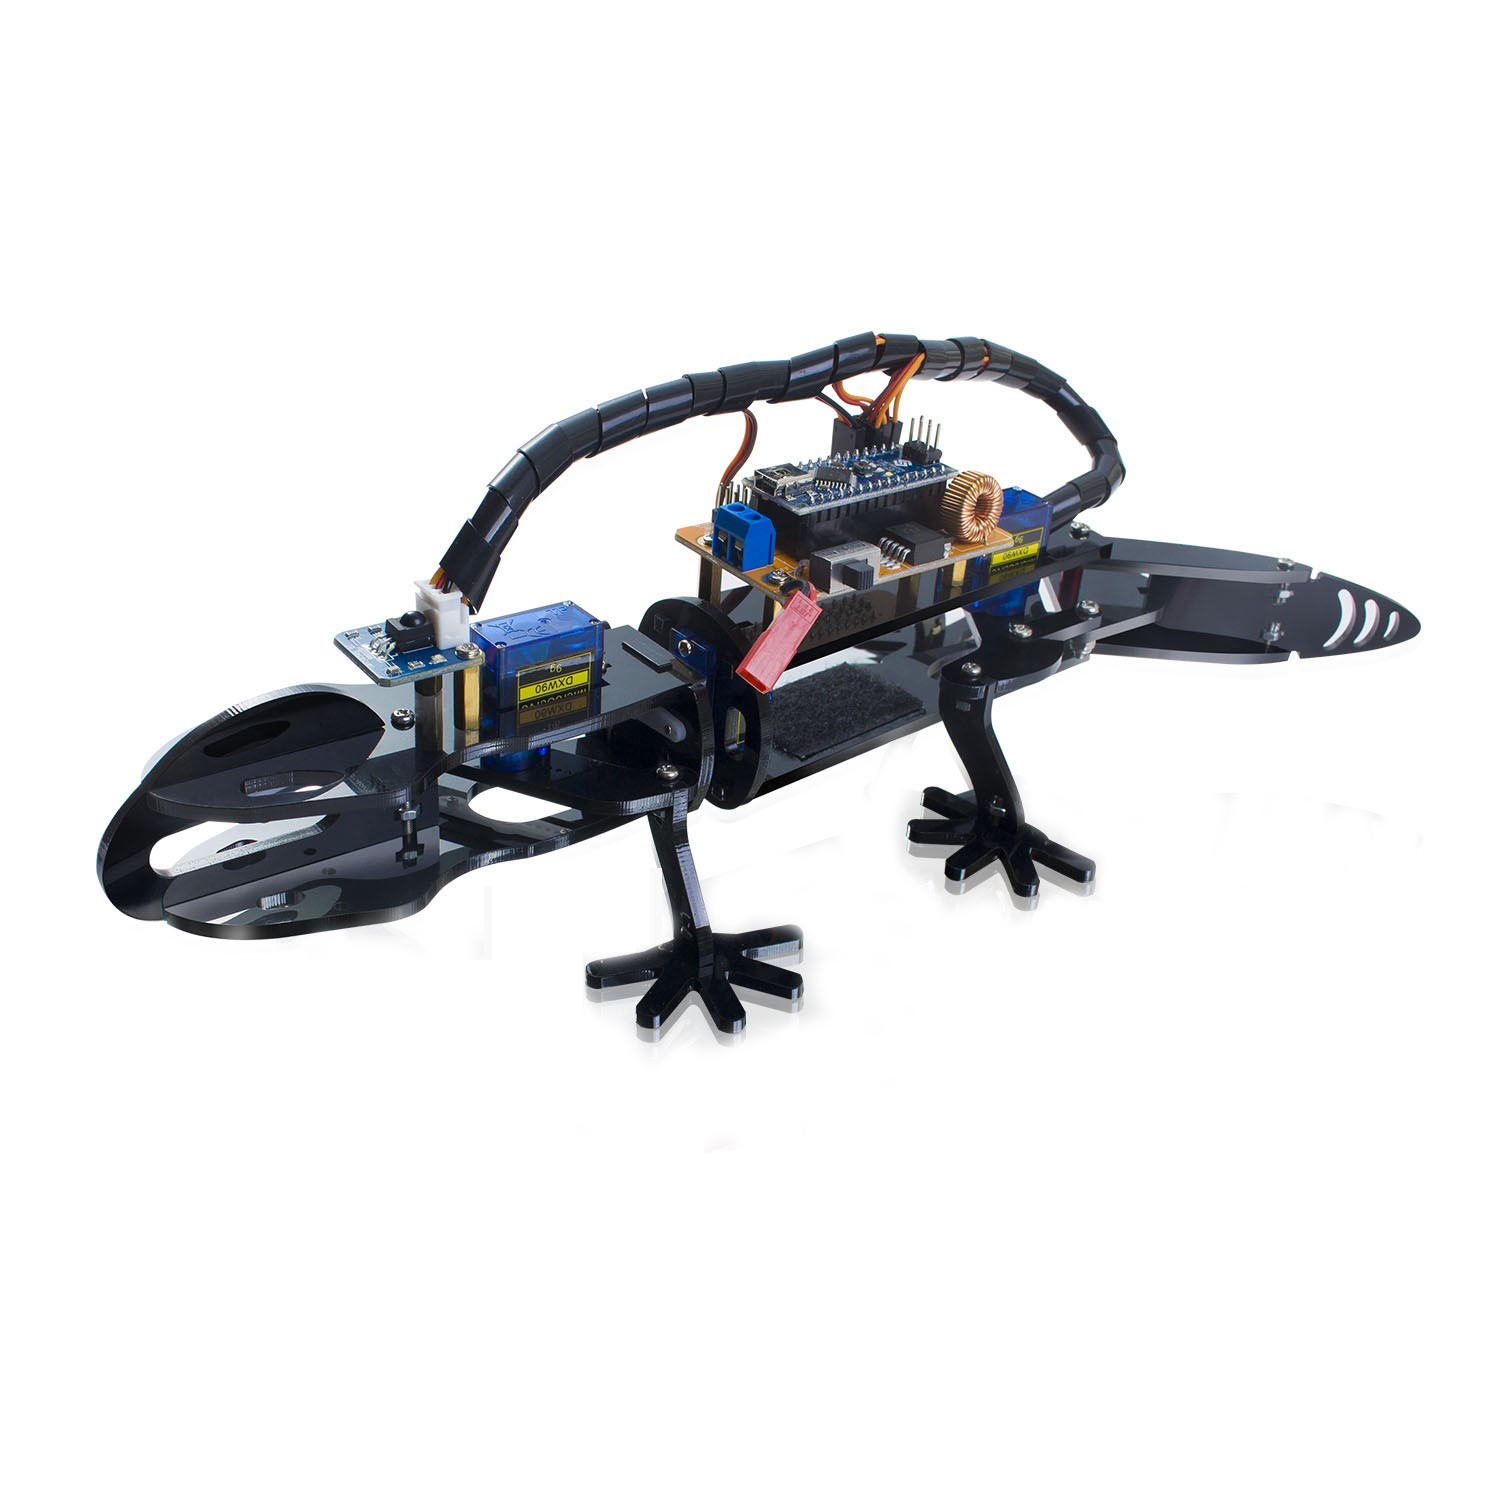 

SunFounder Bionic Lizard Robot Visual Programming Образовательный робот DIY Набор для детей Дистанционное Управление